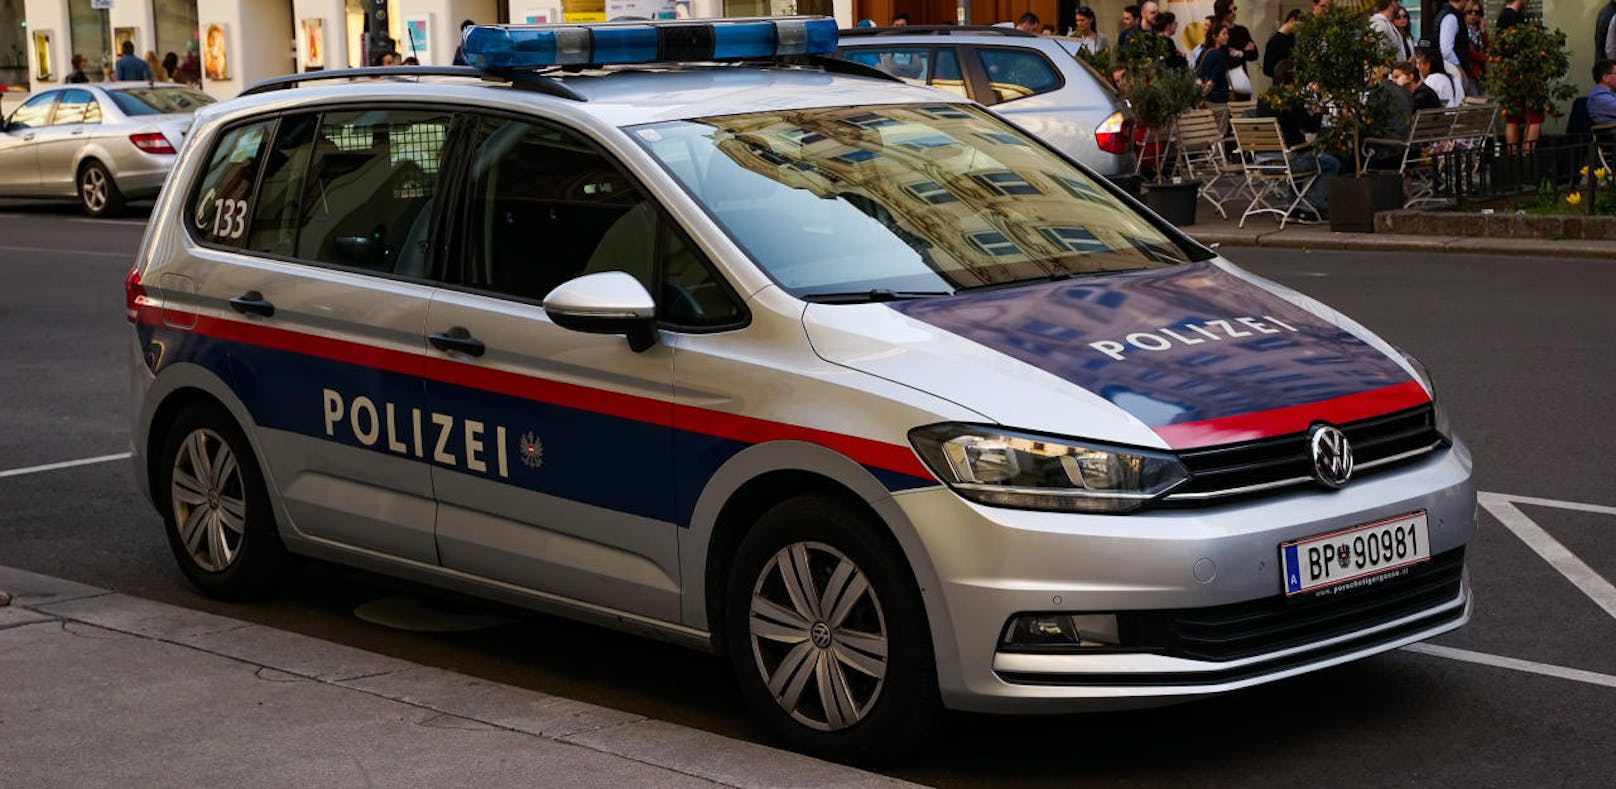 Symbolfoto eines Polizei-Autos. IM Grazer Tötungsdelikt scheinen die Beamten eine neue Spur gefunden zu haben.